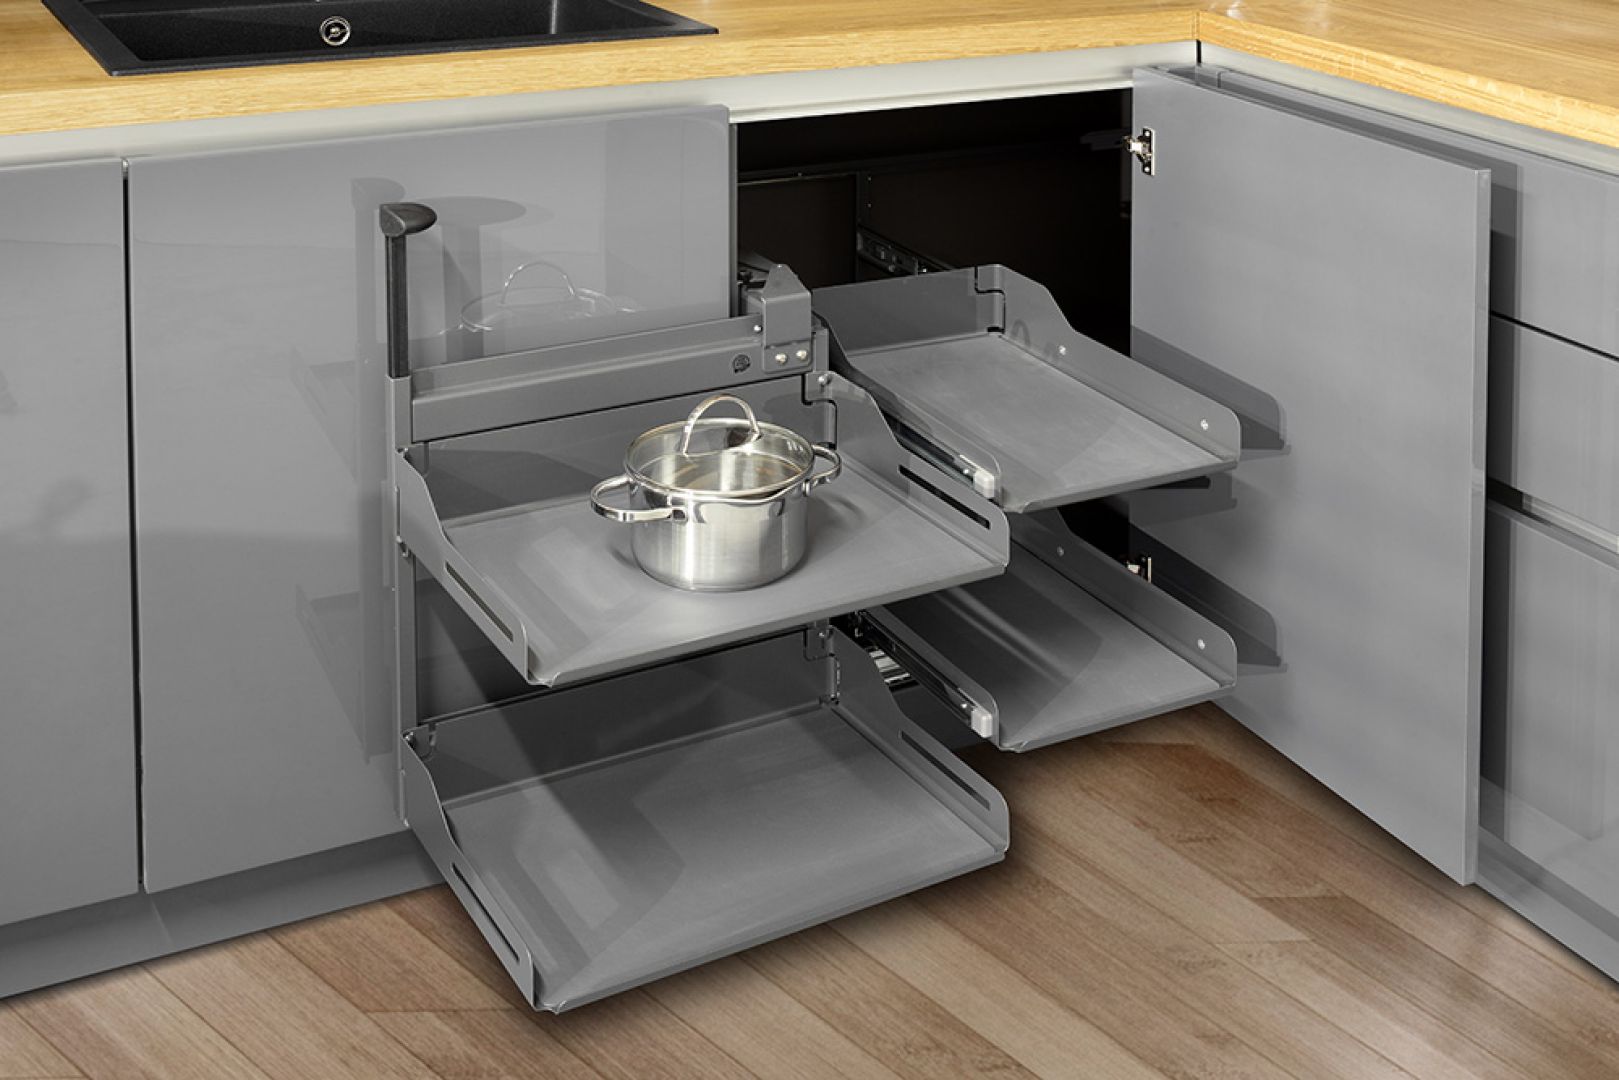 Tylko wysokiej jakości akcesoria meblowe zapewnia komfort korzystania z szafek i szuflad w kuchni. Fot. Stolzen